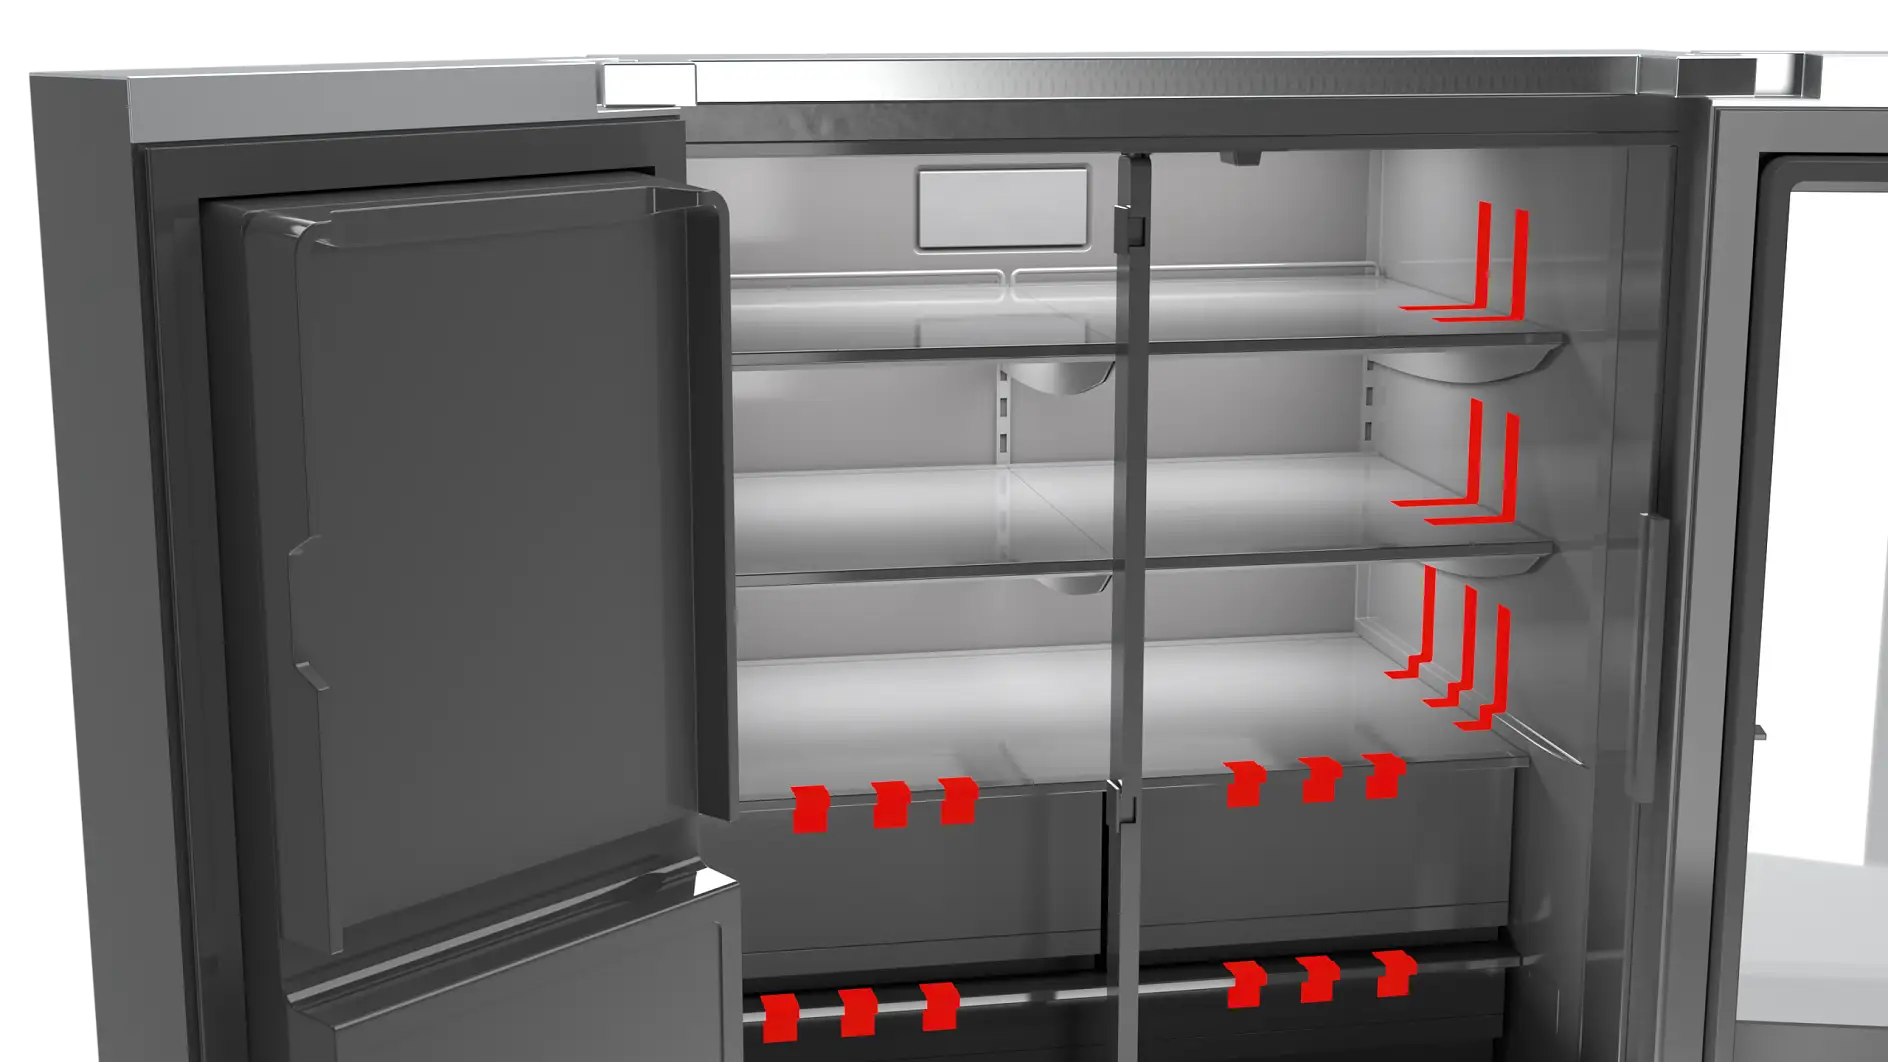 Friddge_tesa-Appliances-Transport-Securing-of-Shelves-and-Bins-Tape-illustration_300dpi